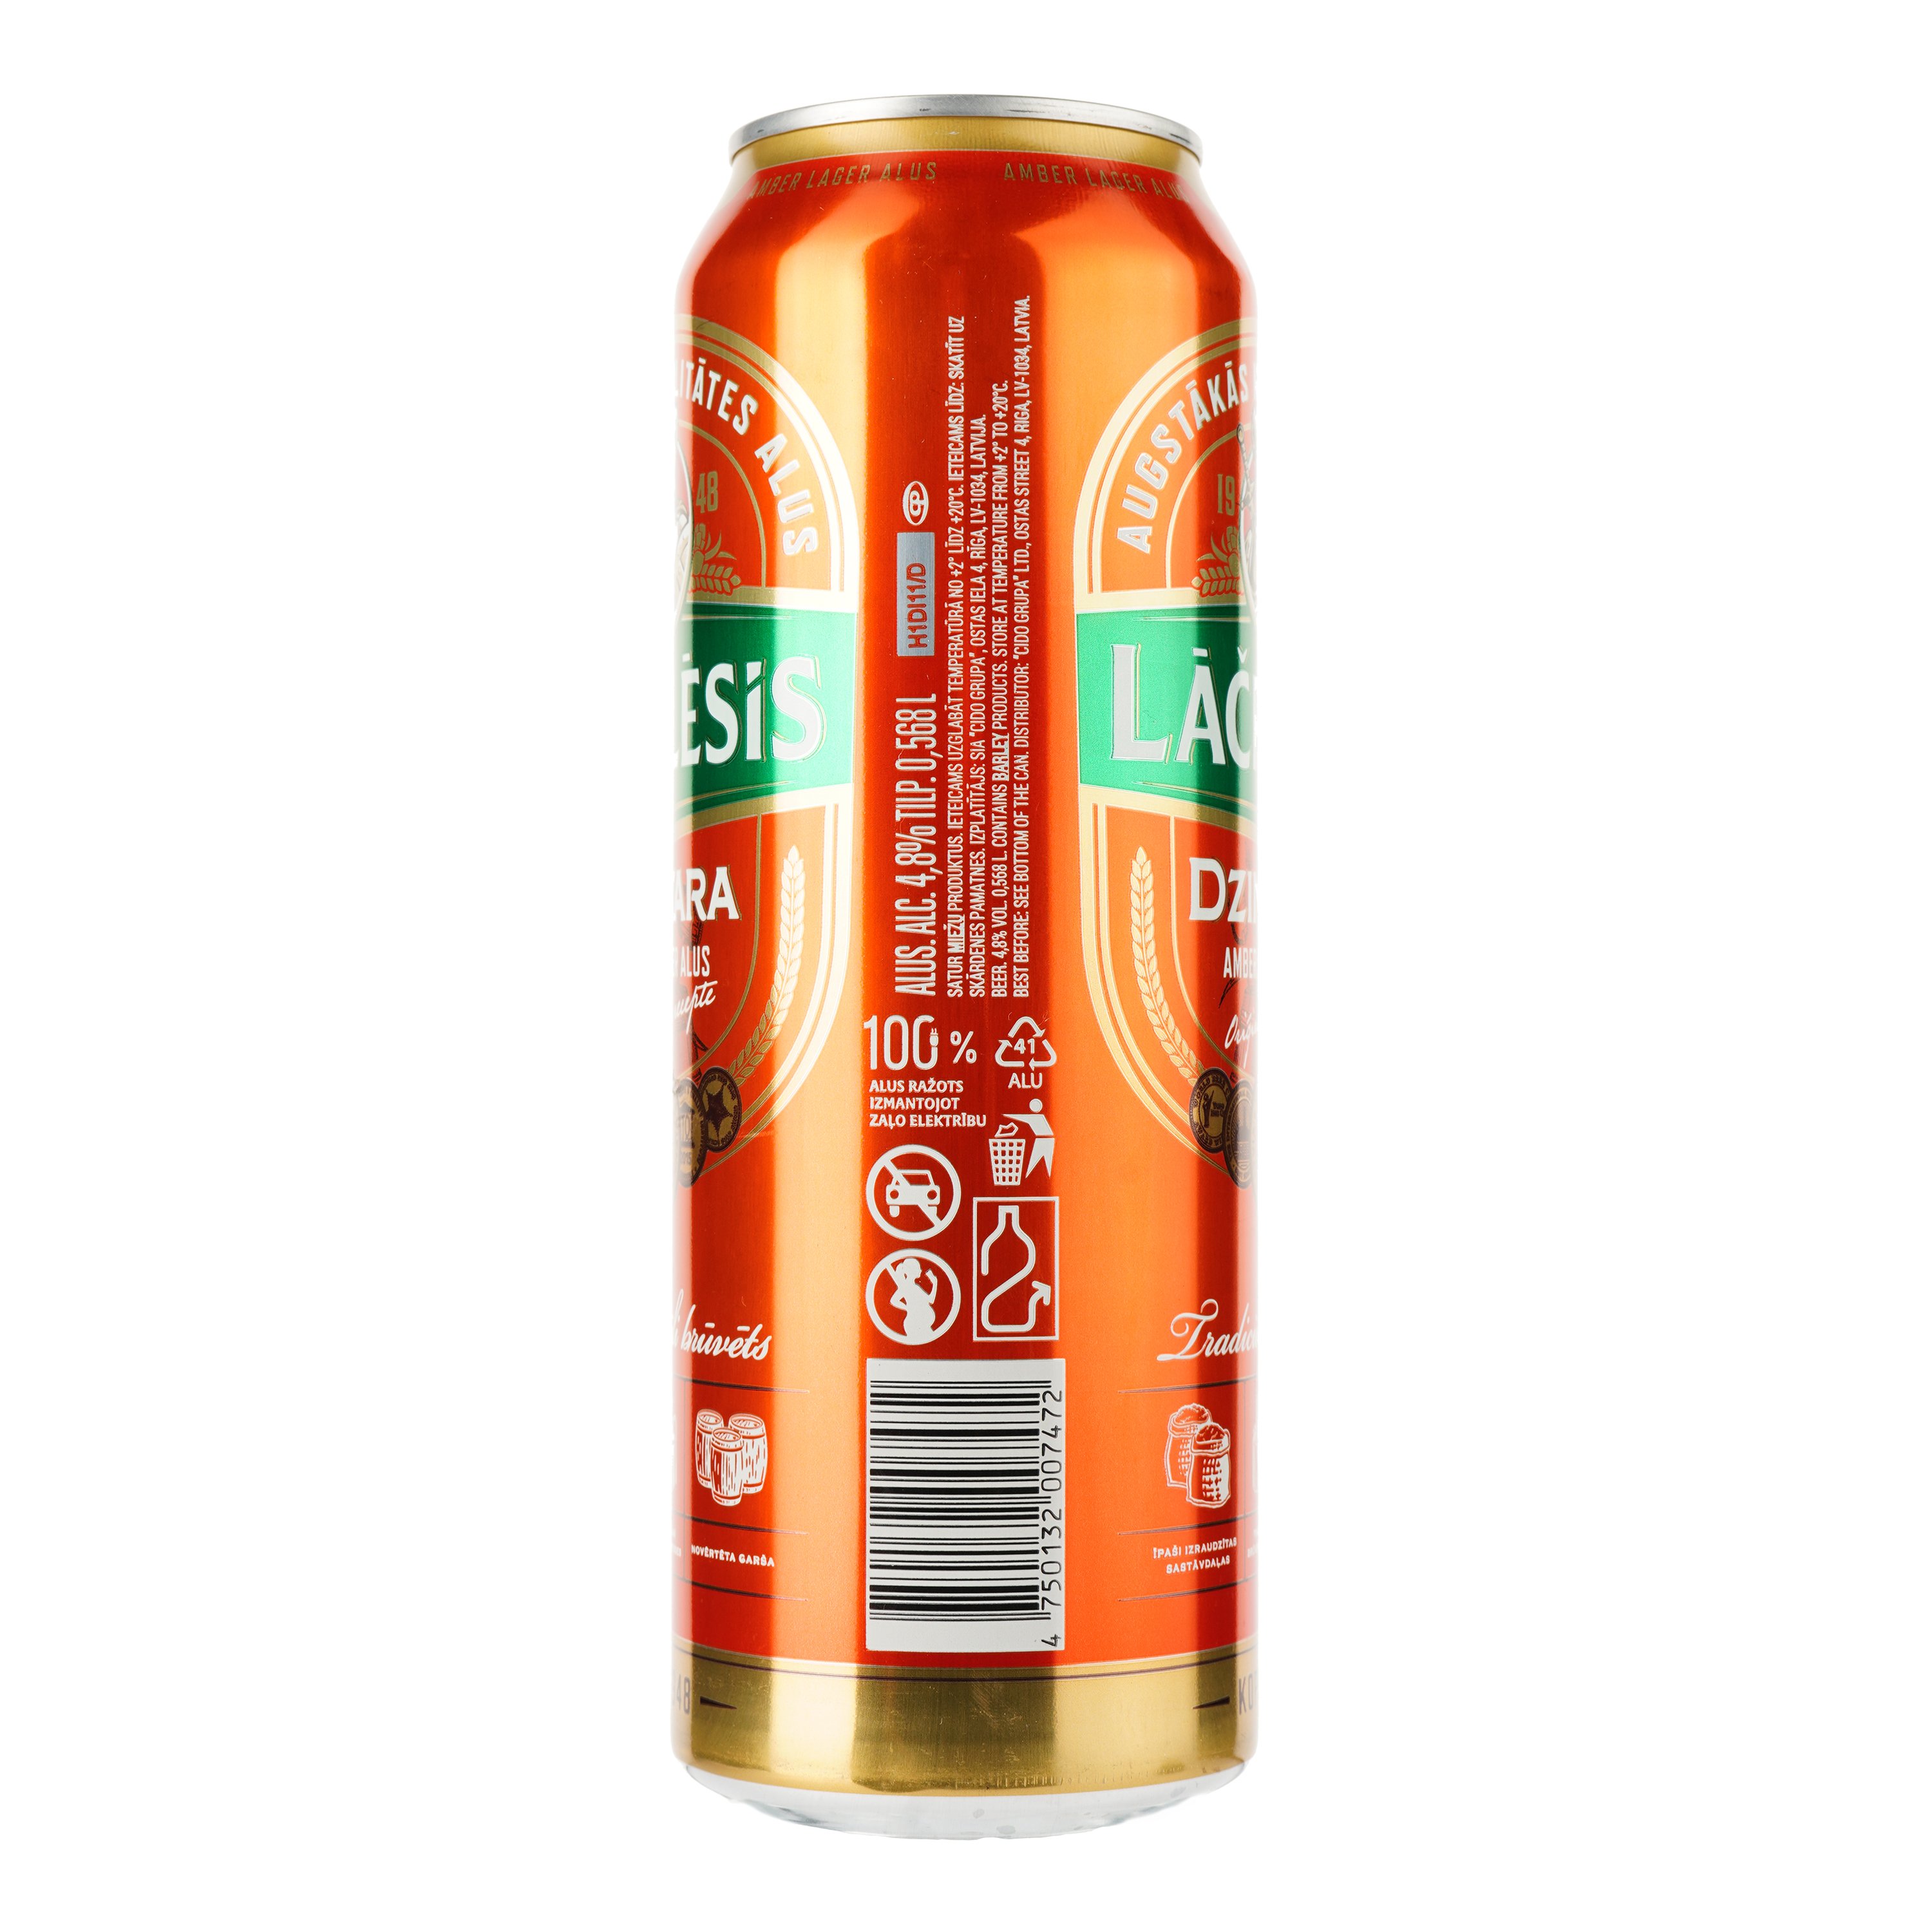 Пиво Lacplesis Dzintara светлое, 4.8%, ж/б, 0.568 л - фото 2